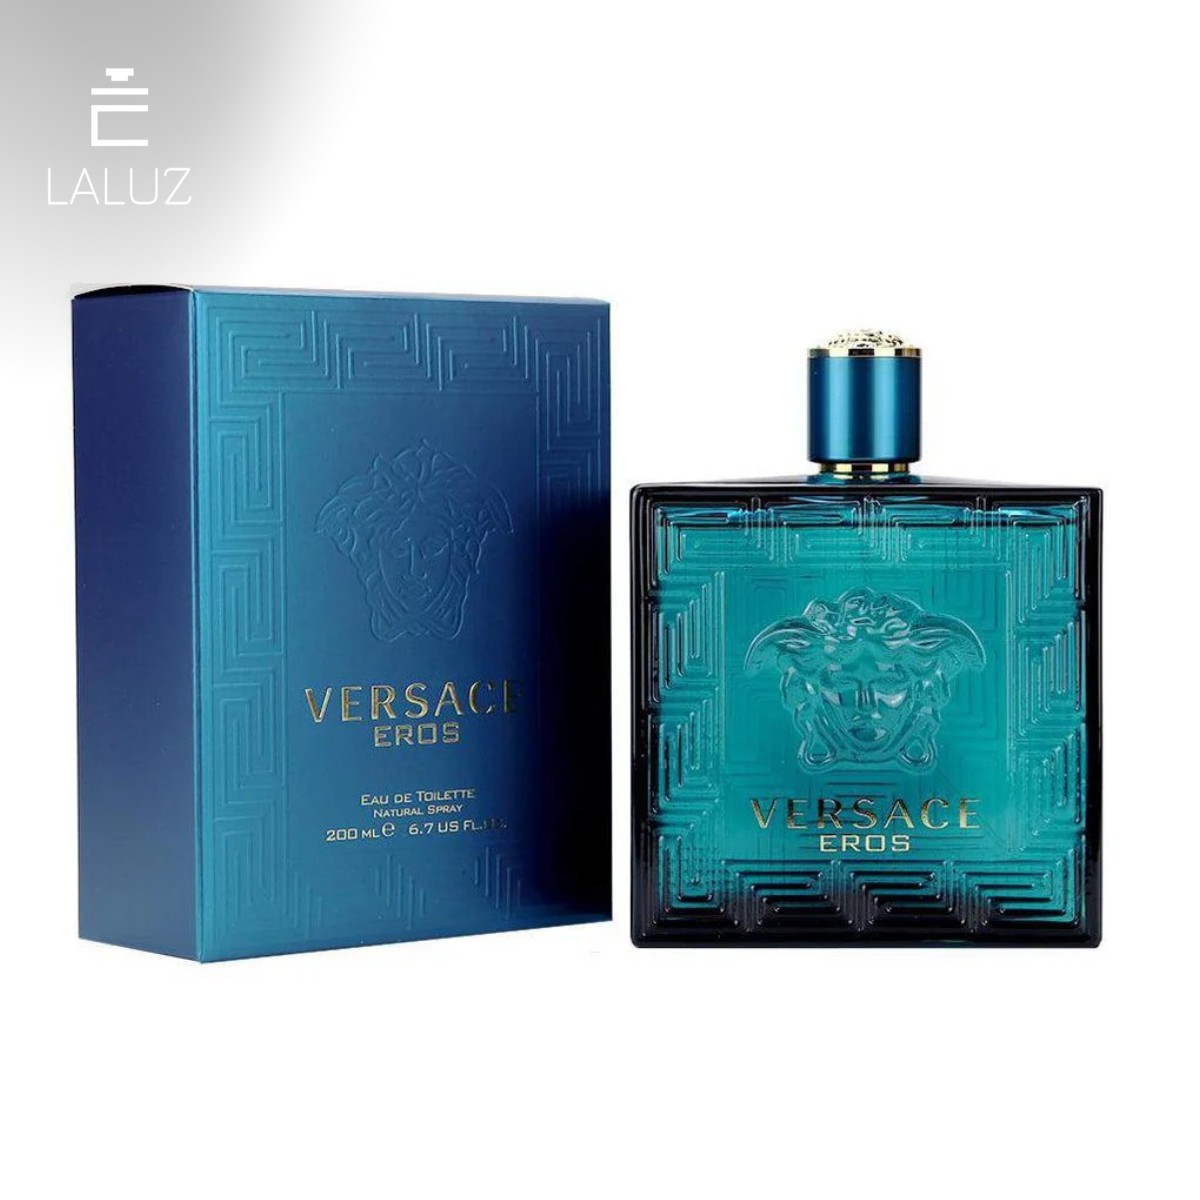 Nước hoa nam Versace Eros EDT có mùi hương vô cùng thu hút